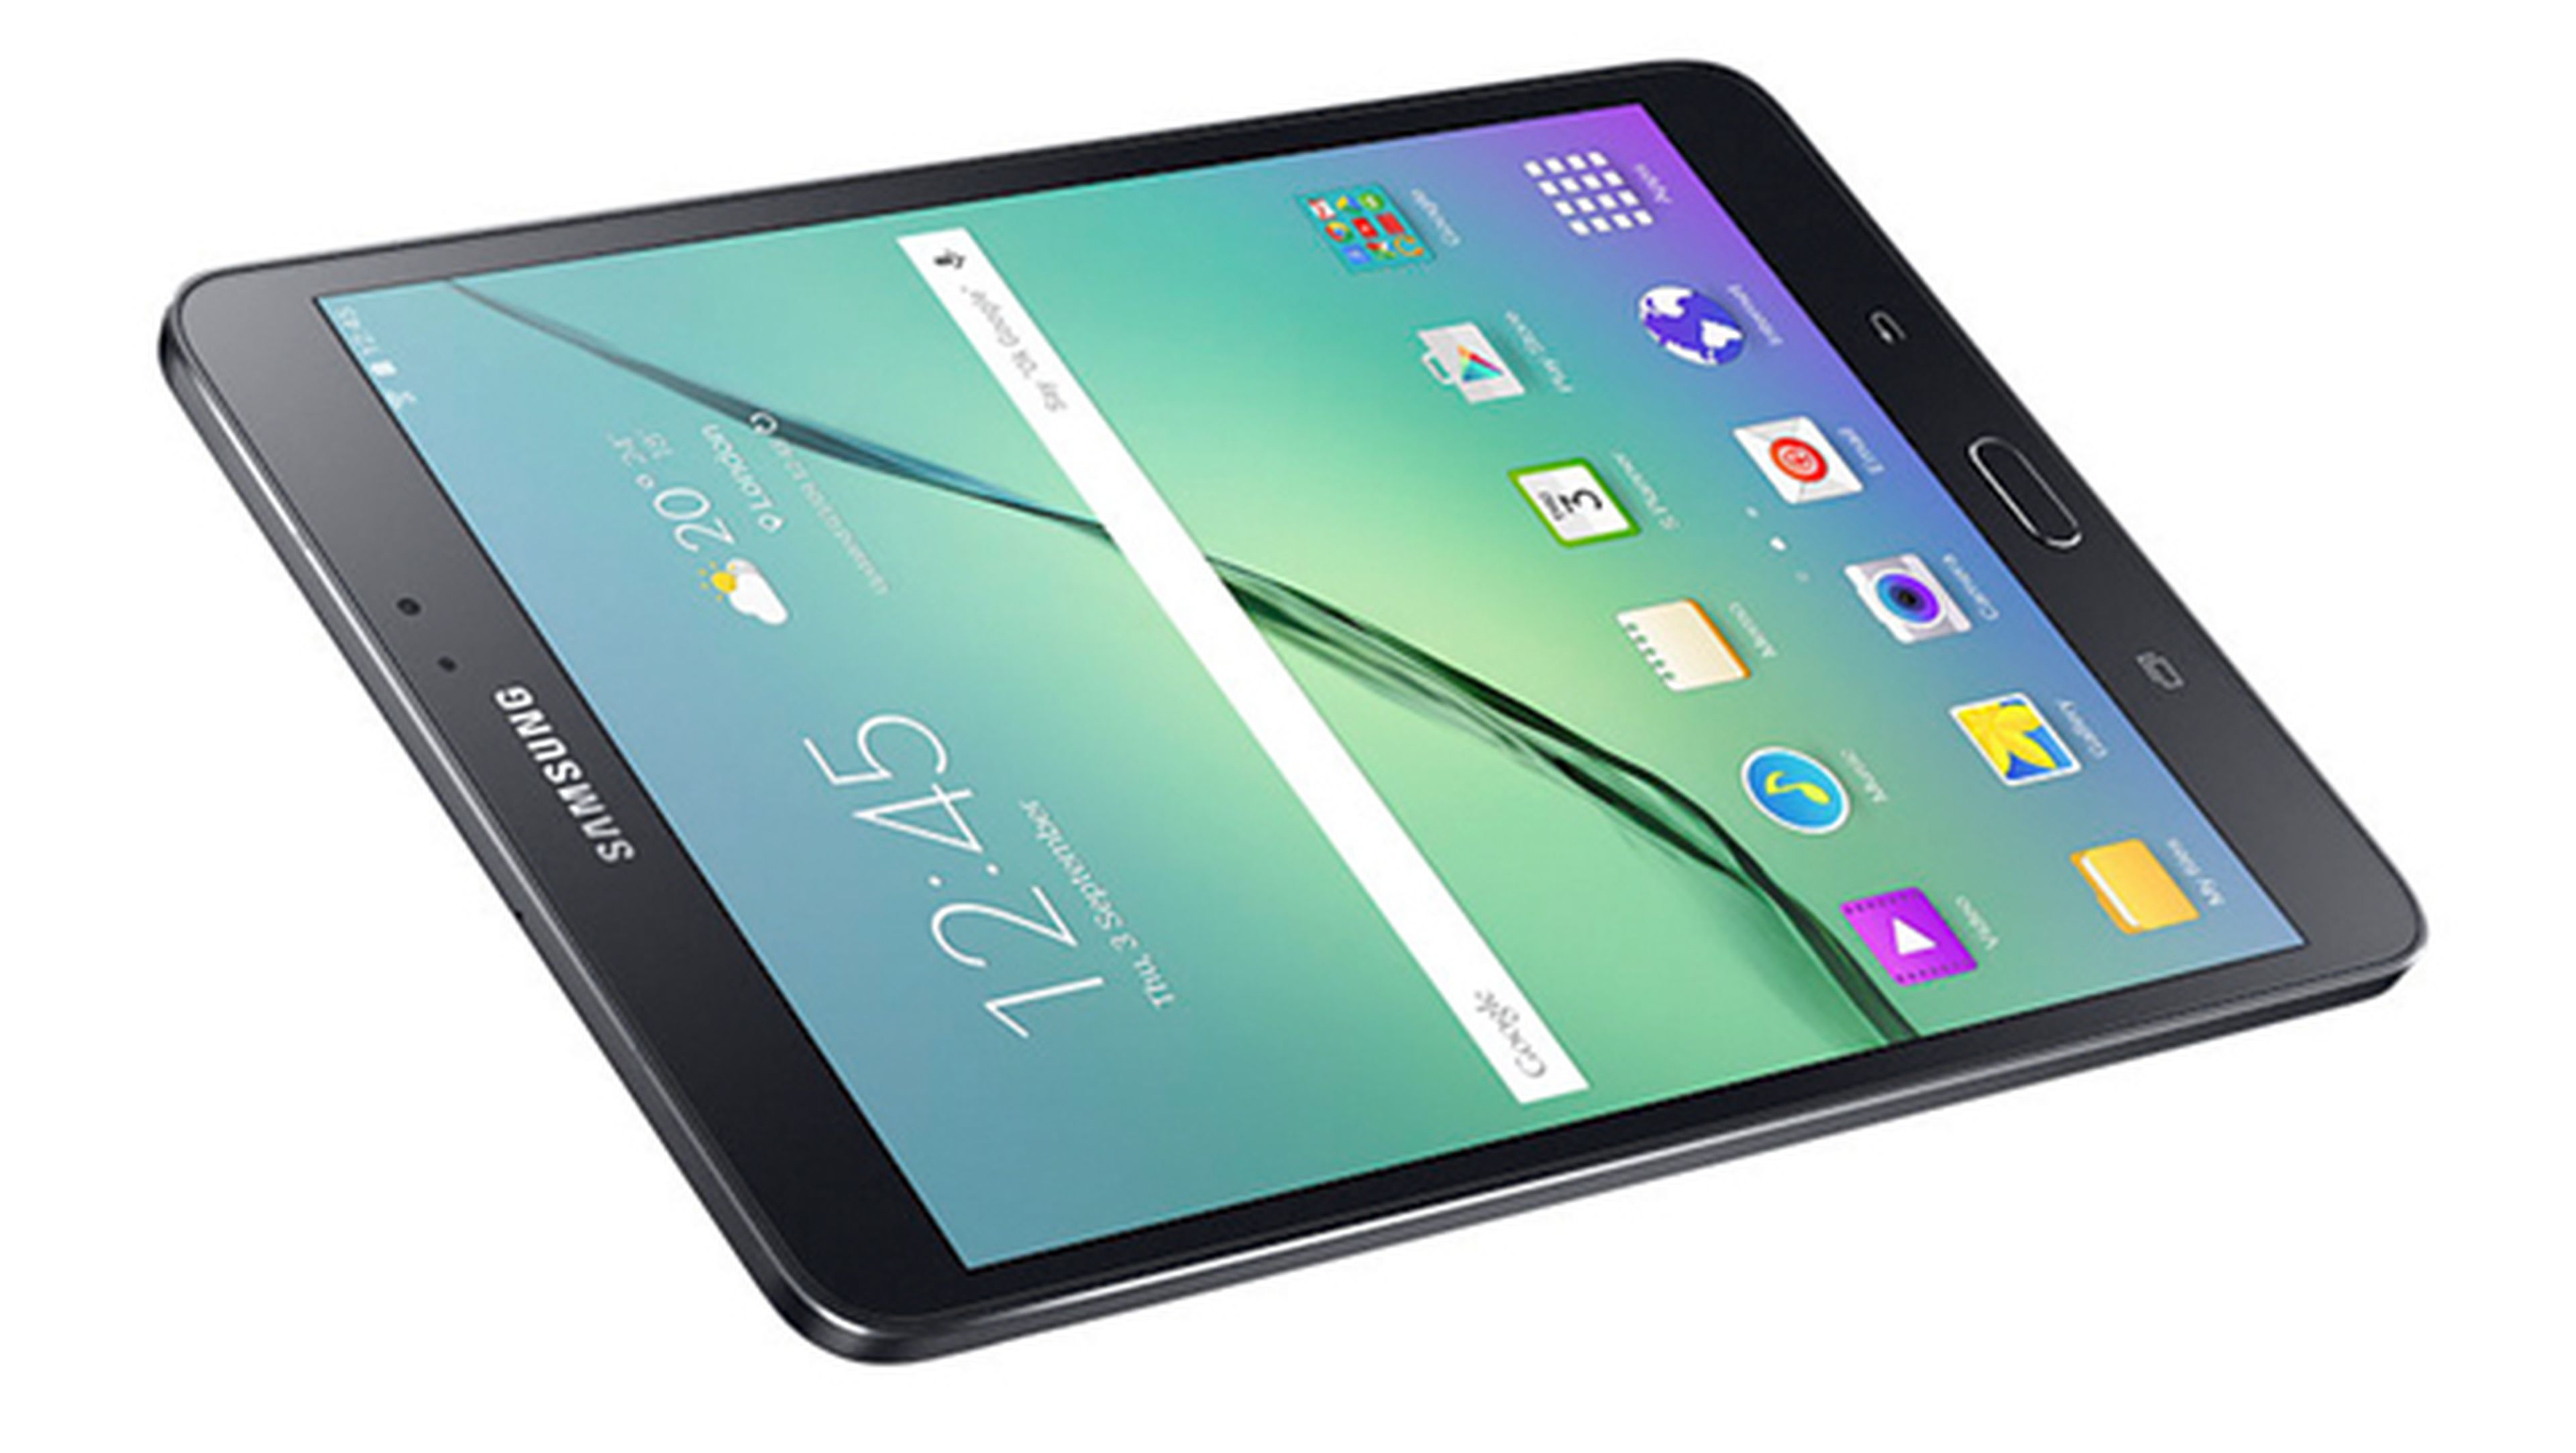 Samsung Galaxy Tab S2 8”